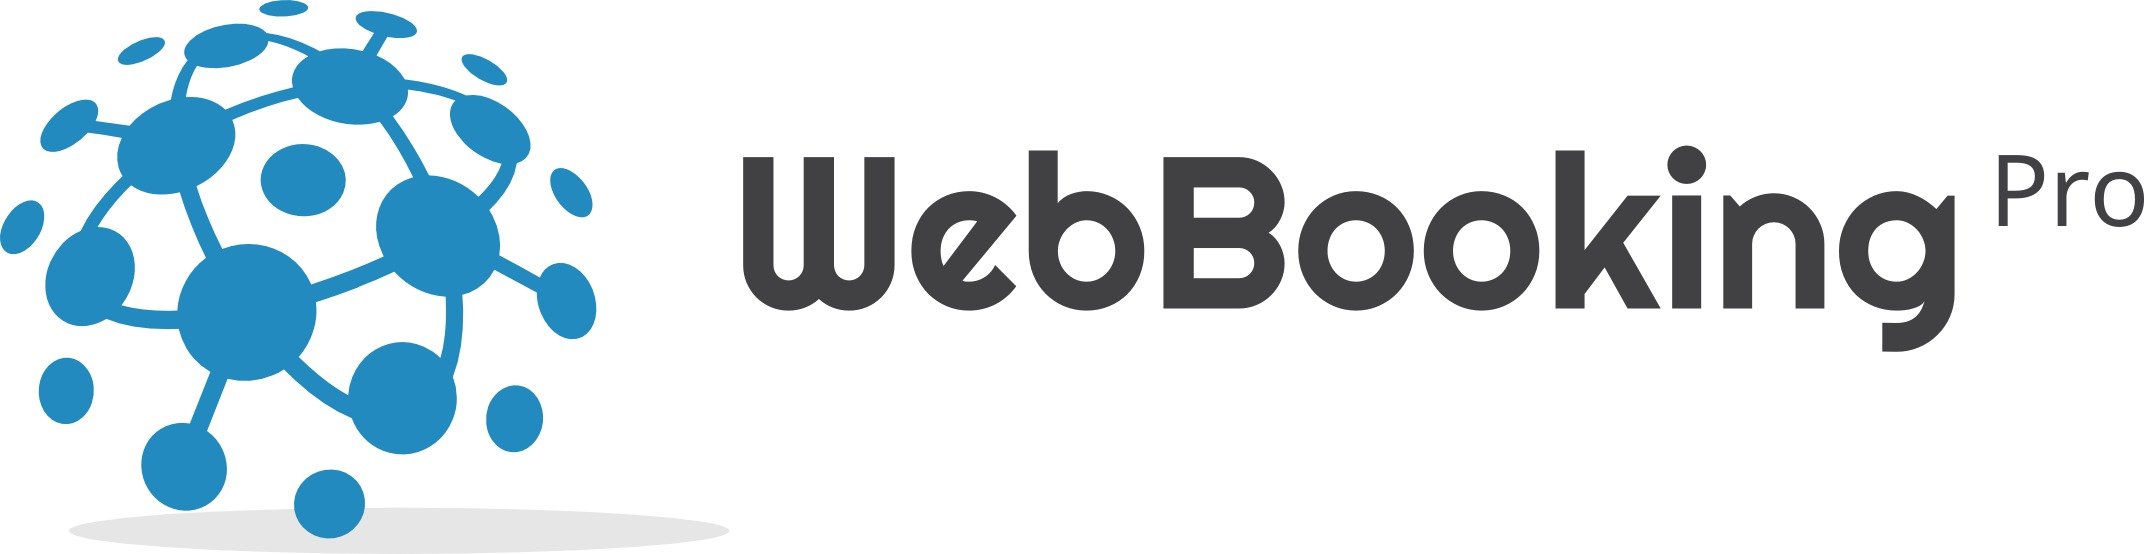 WebBookingPro